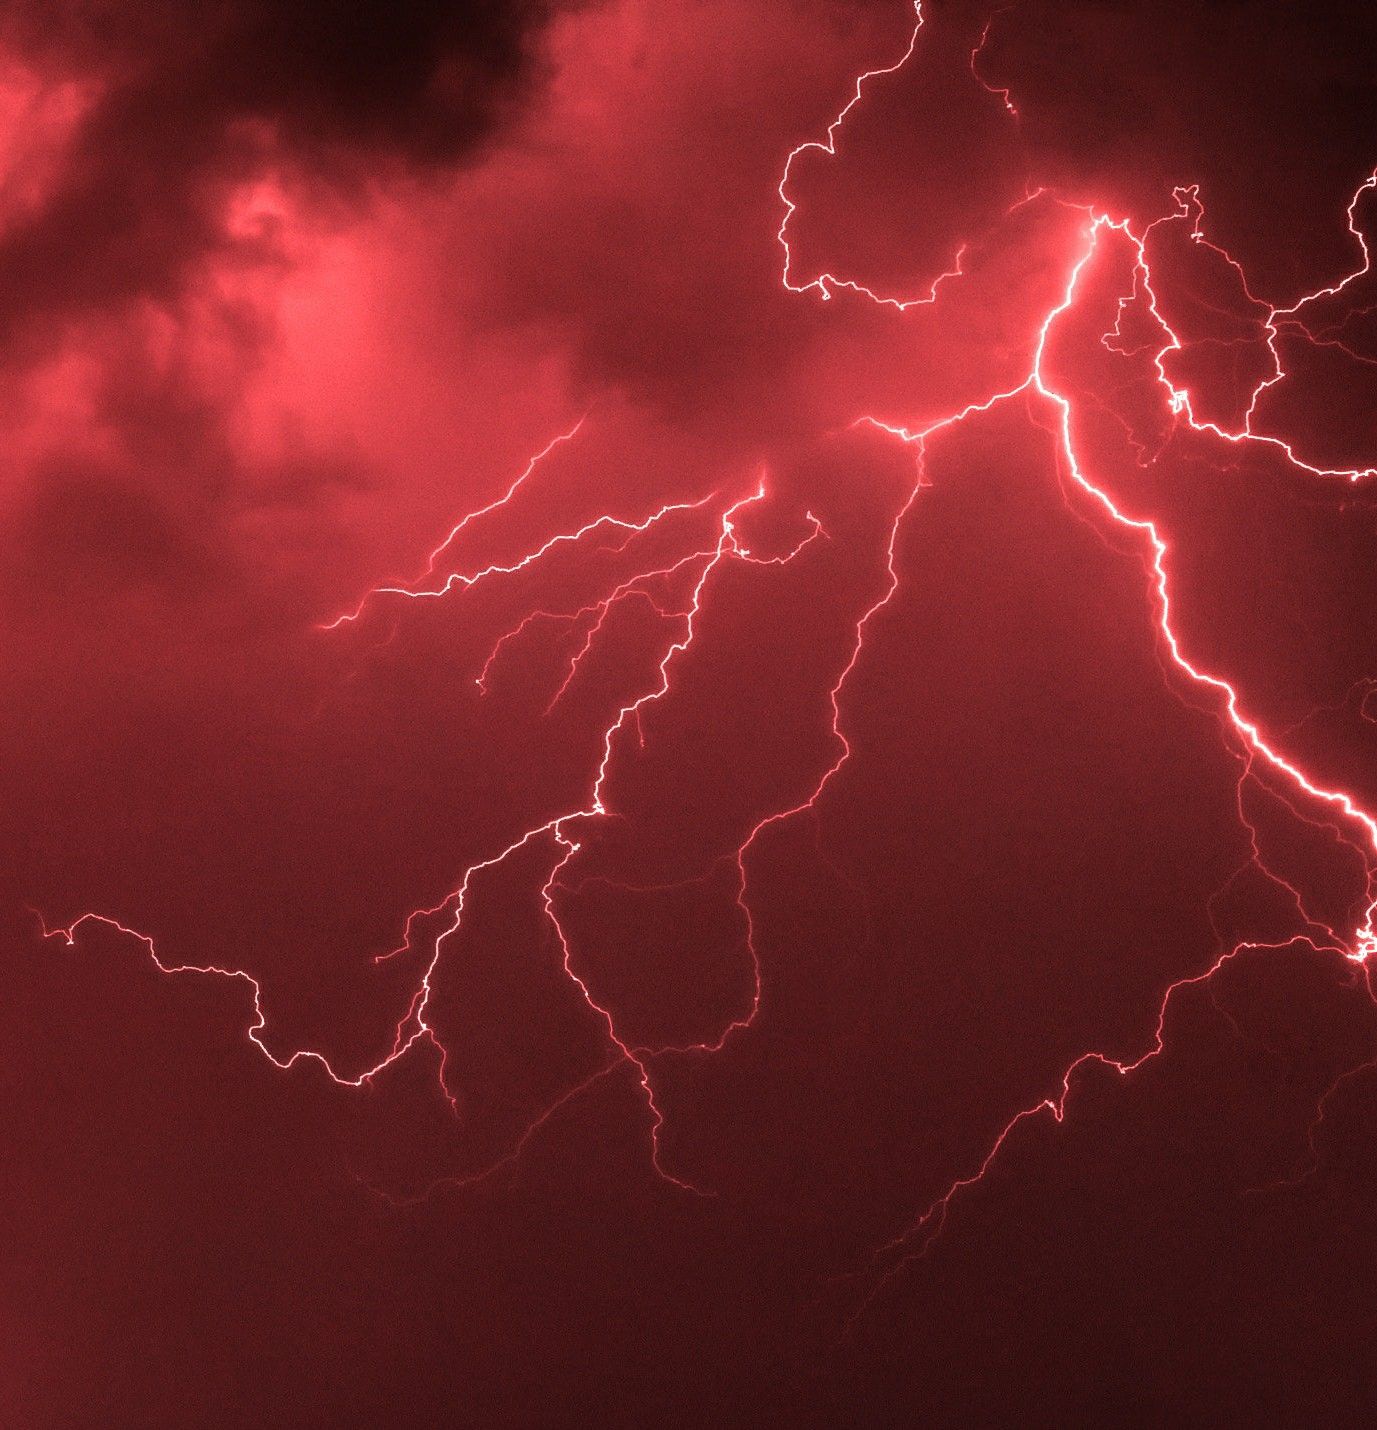 Lightning Photography Image